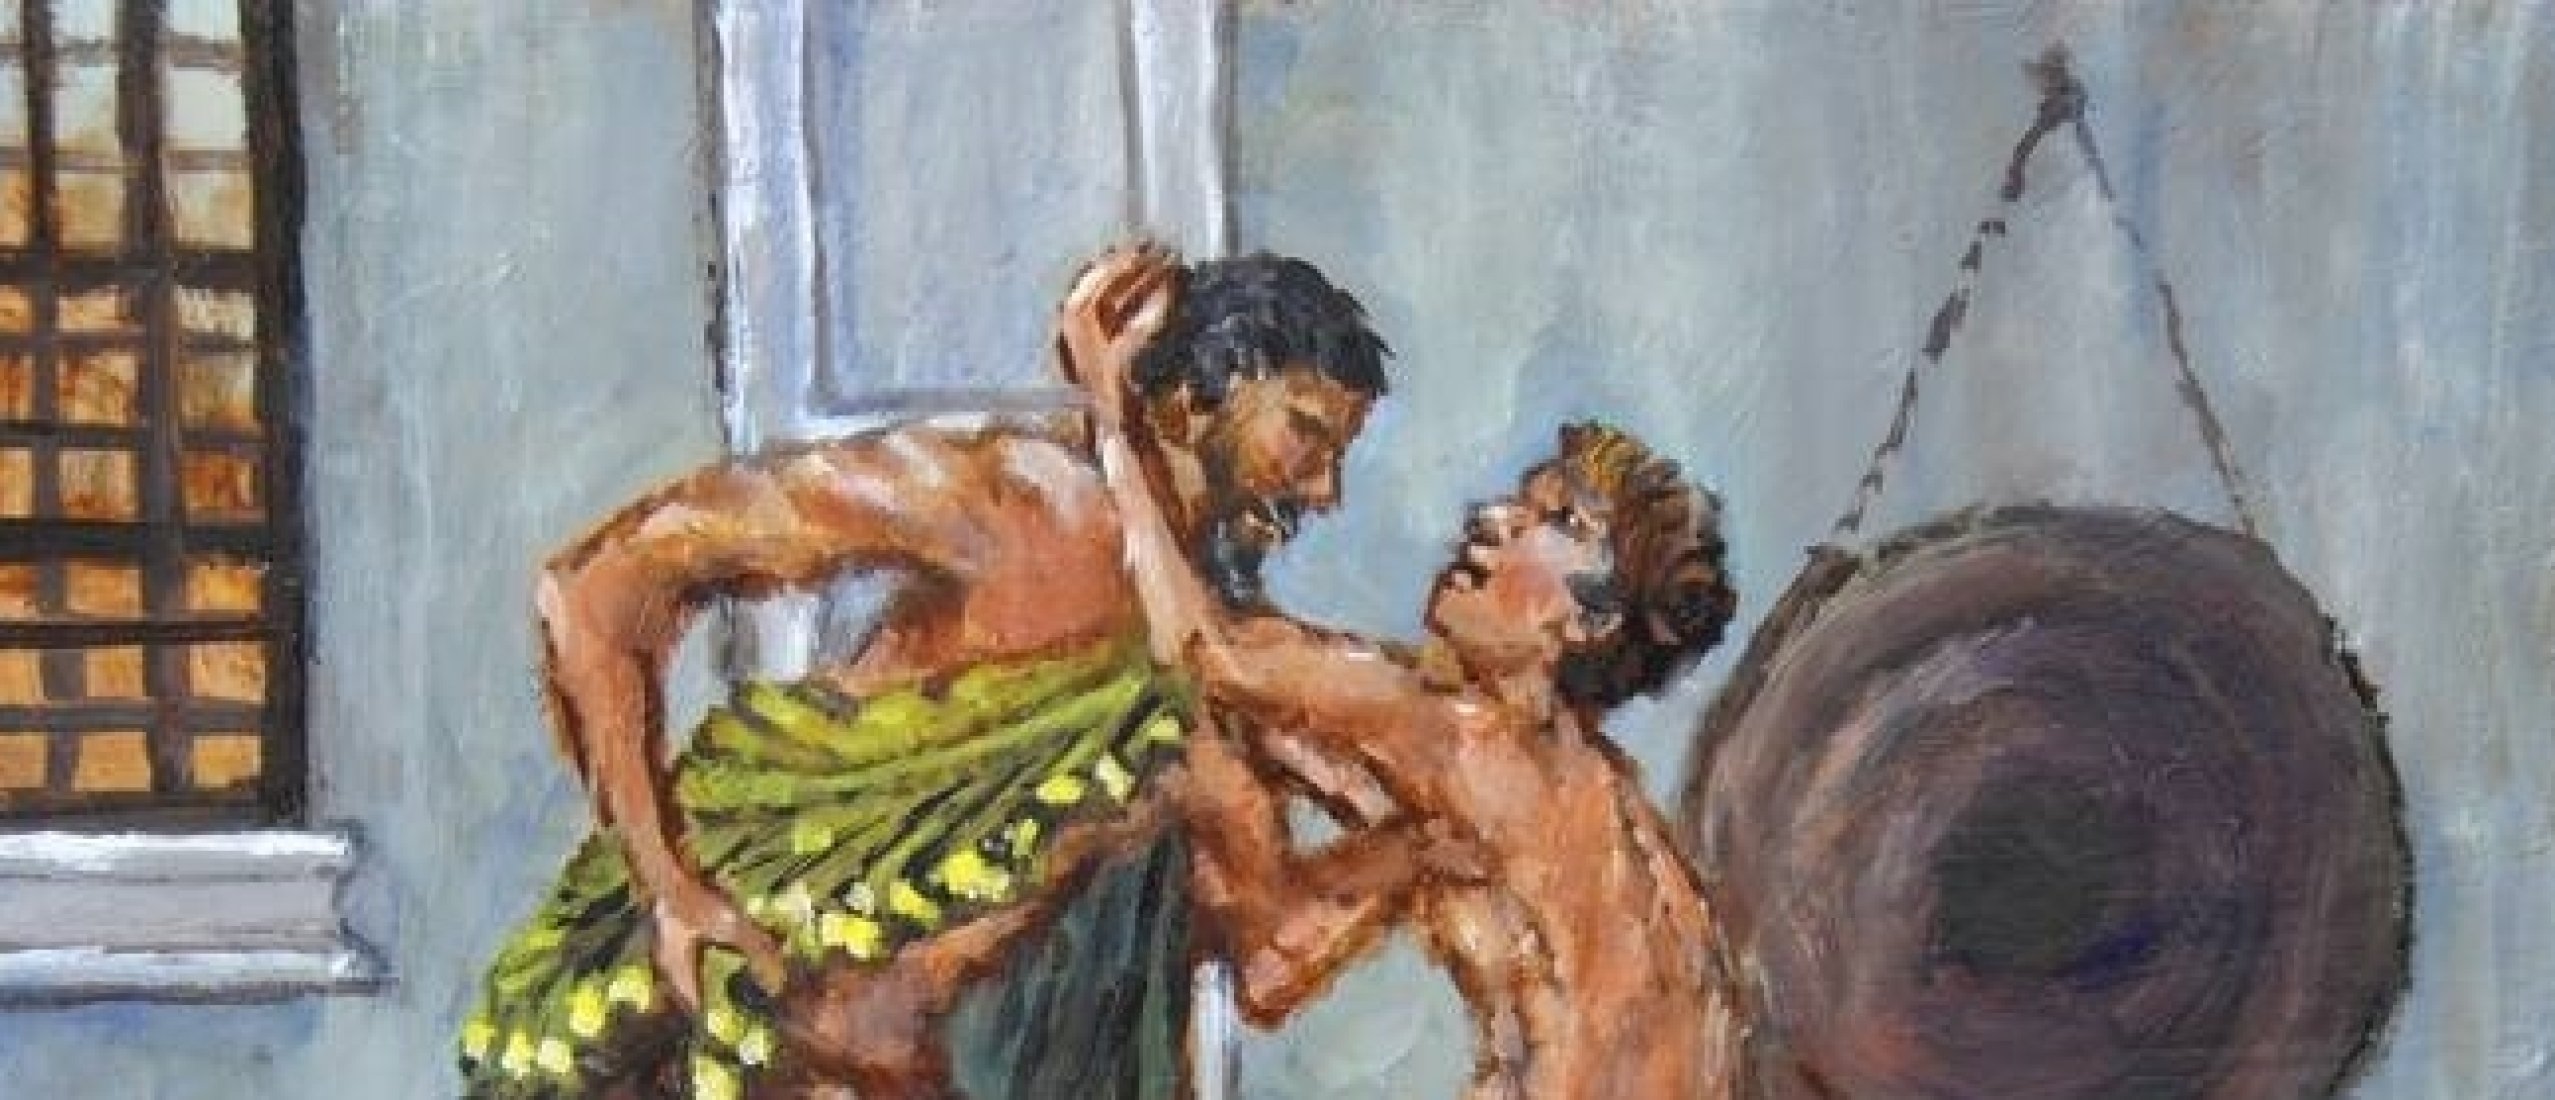 Awakening Eros as Seen by the Greek Painter Giorgos Nicolaou